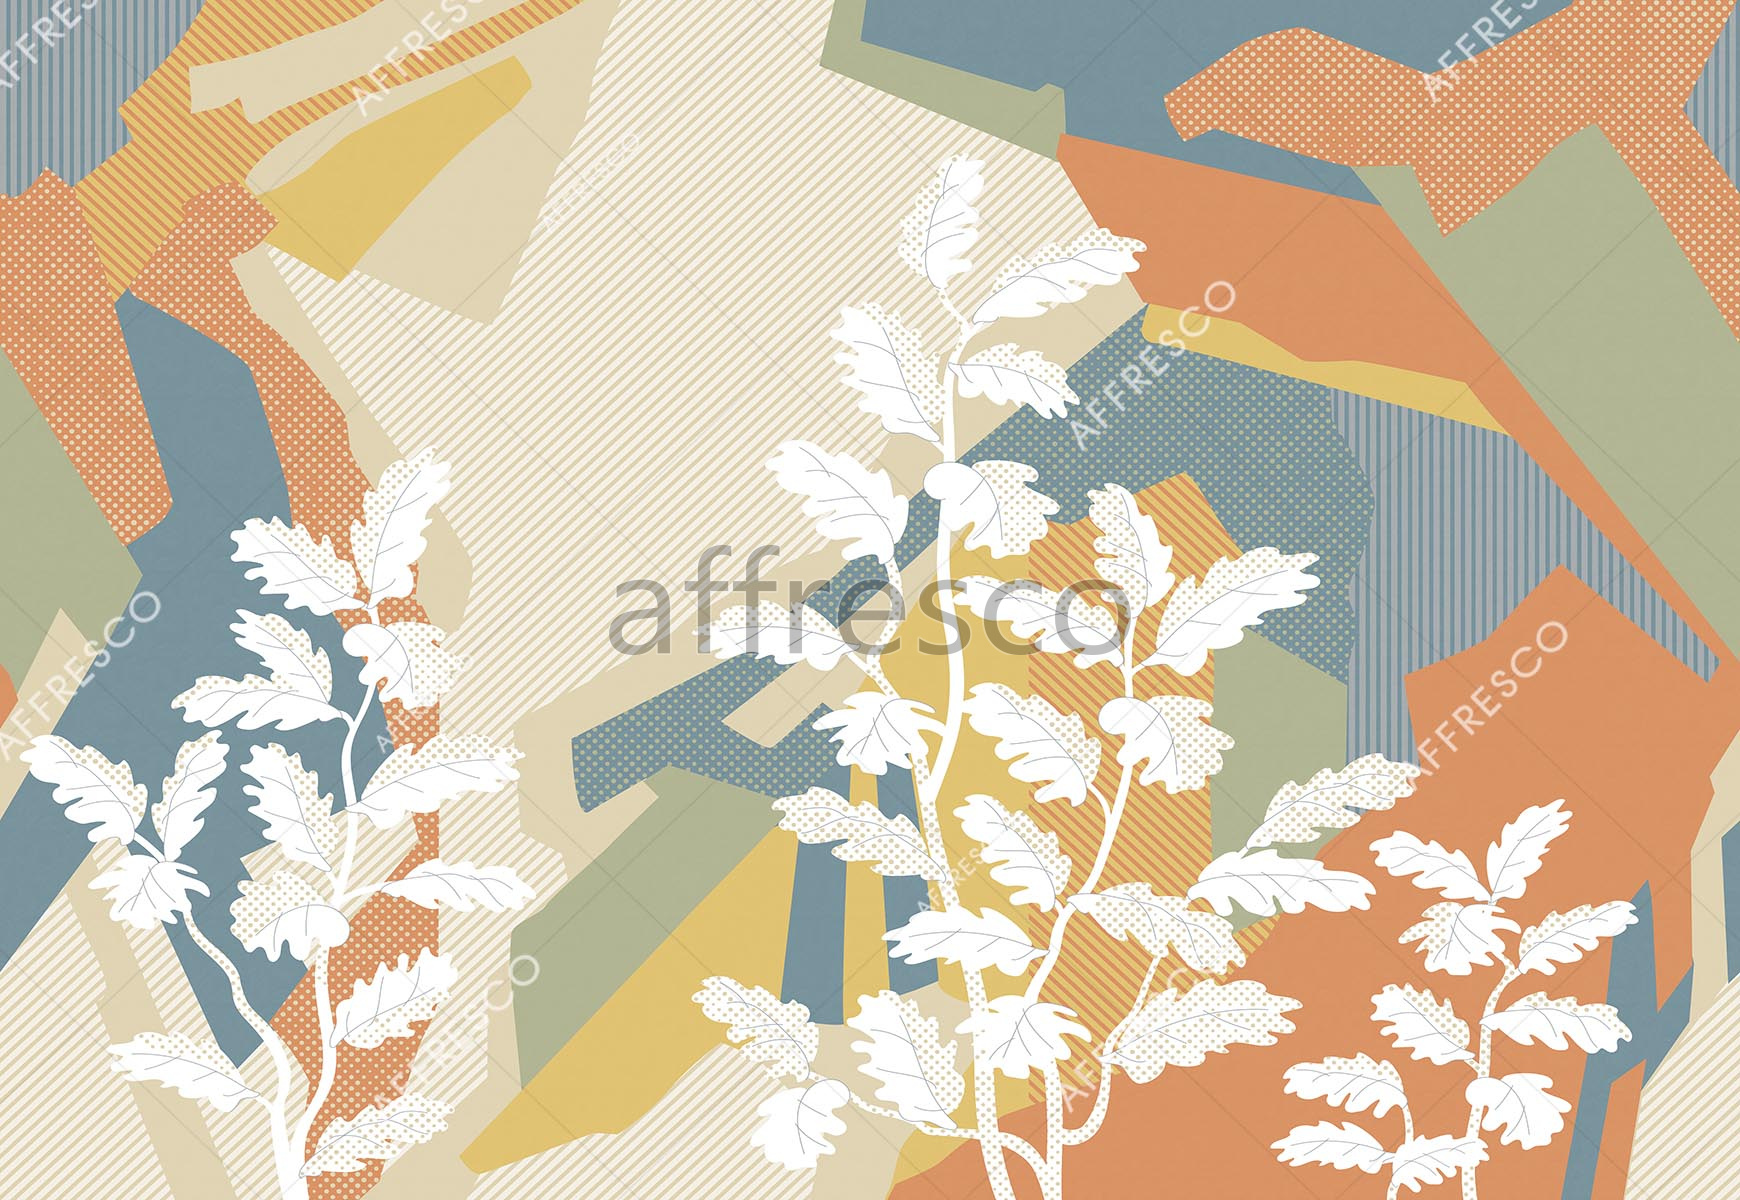 ID139315 | Graphics arts & Ornaments |  | Affresco Factory